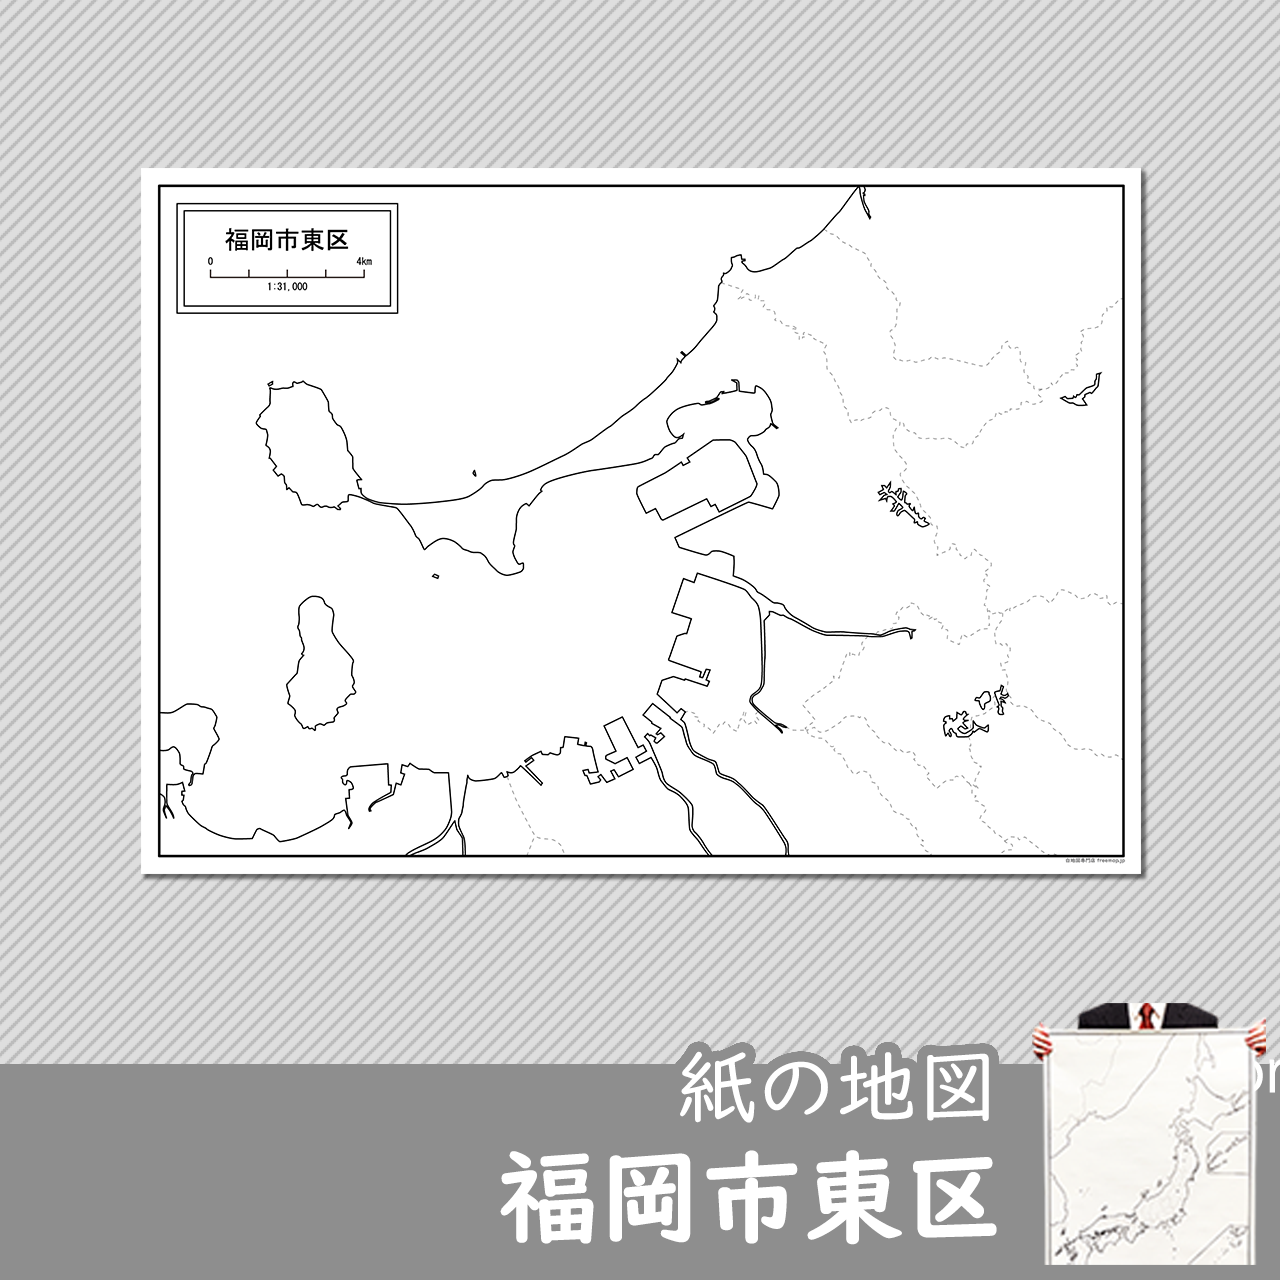 福岡市東区の紙の白地図のサムネイル